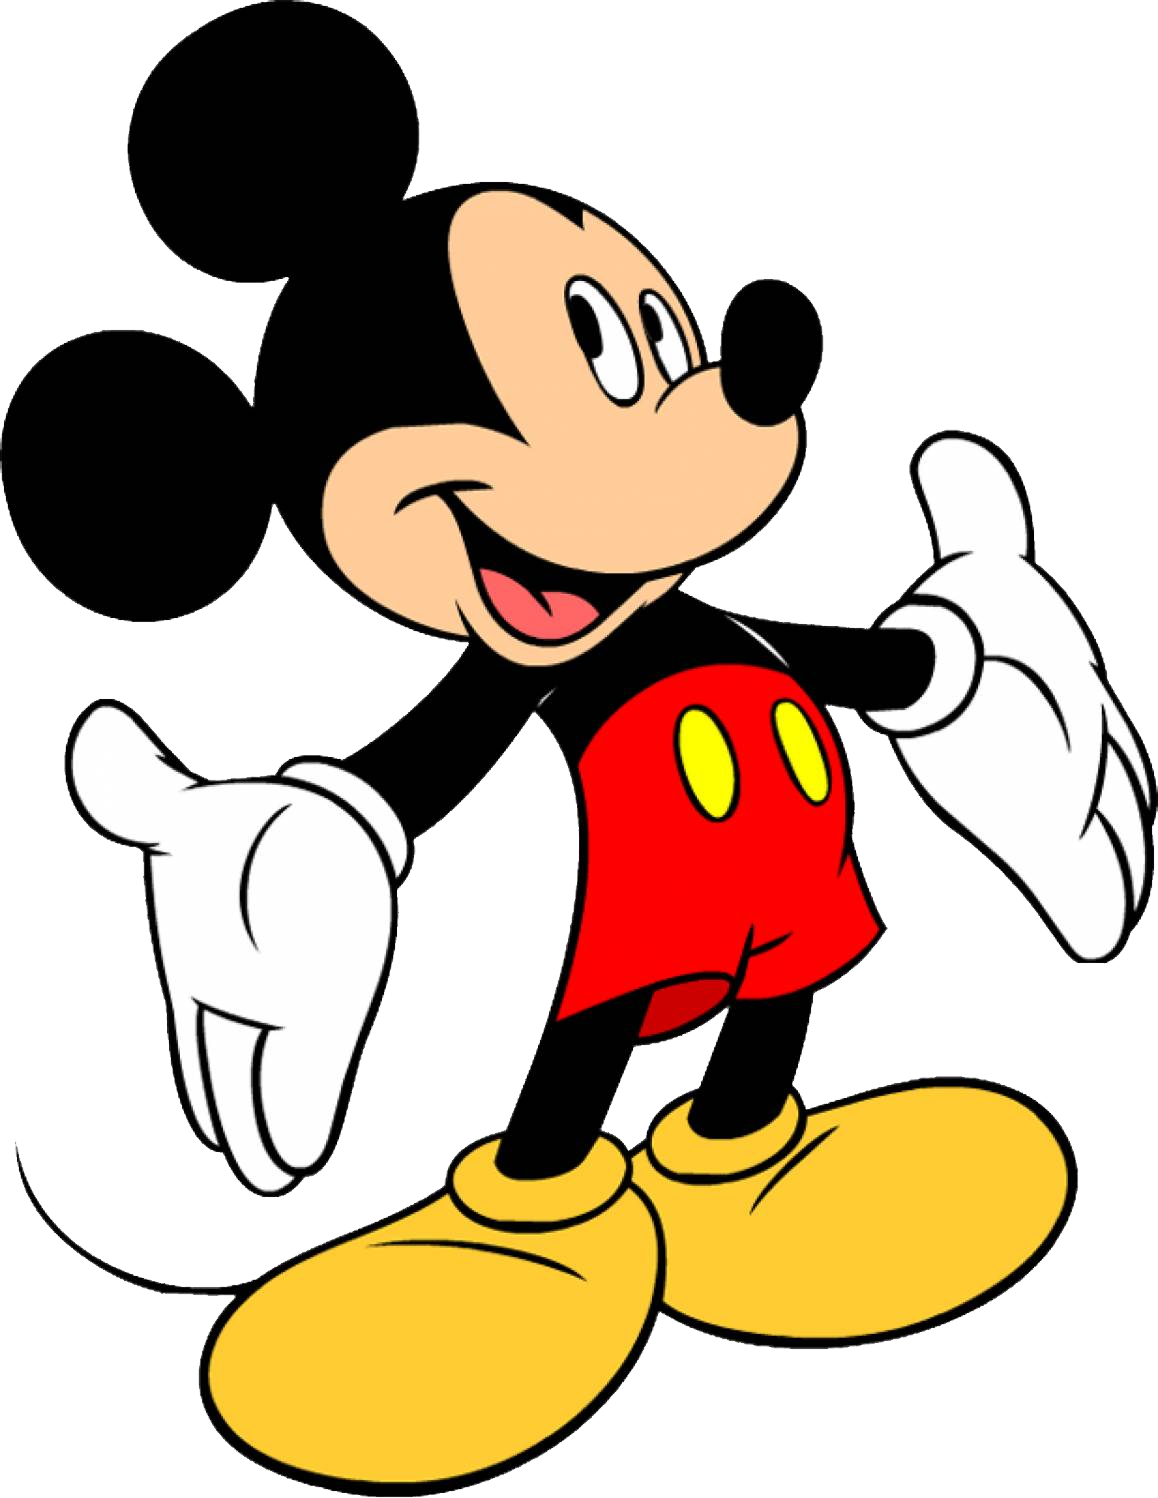 75+ Gambar Kartun Lucu Mickey Mouse Terbaik - Hogan